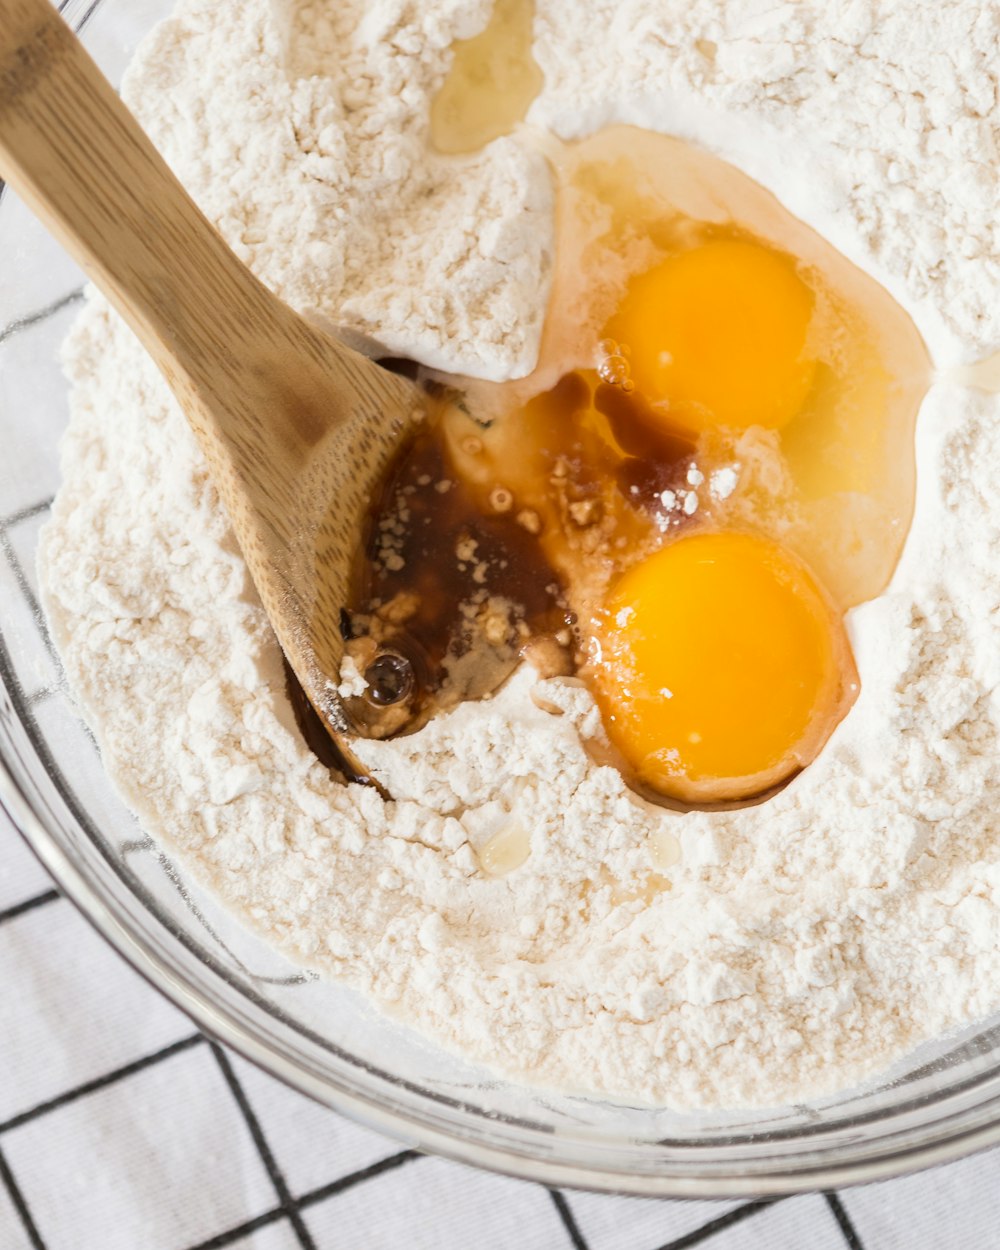 卵と小麦粉